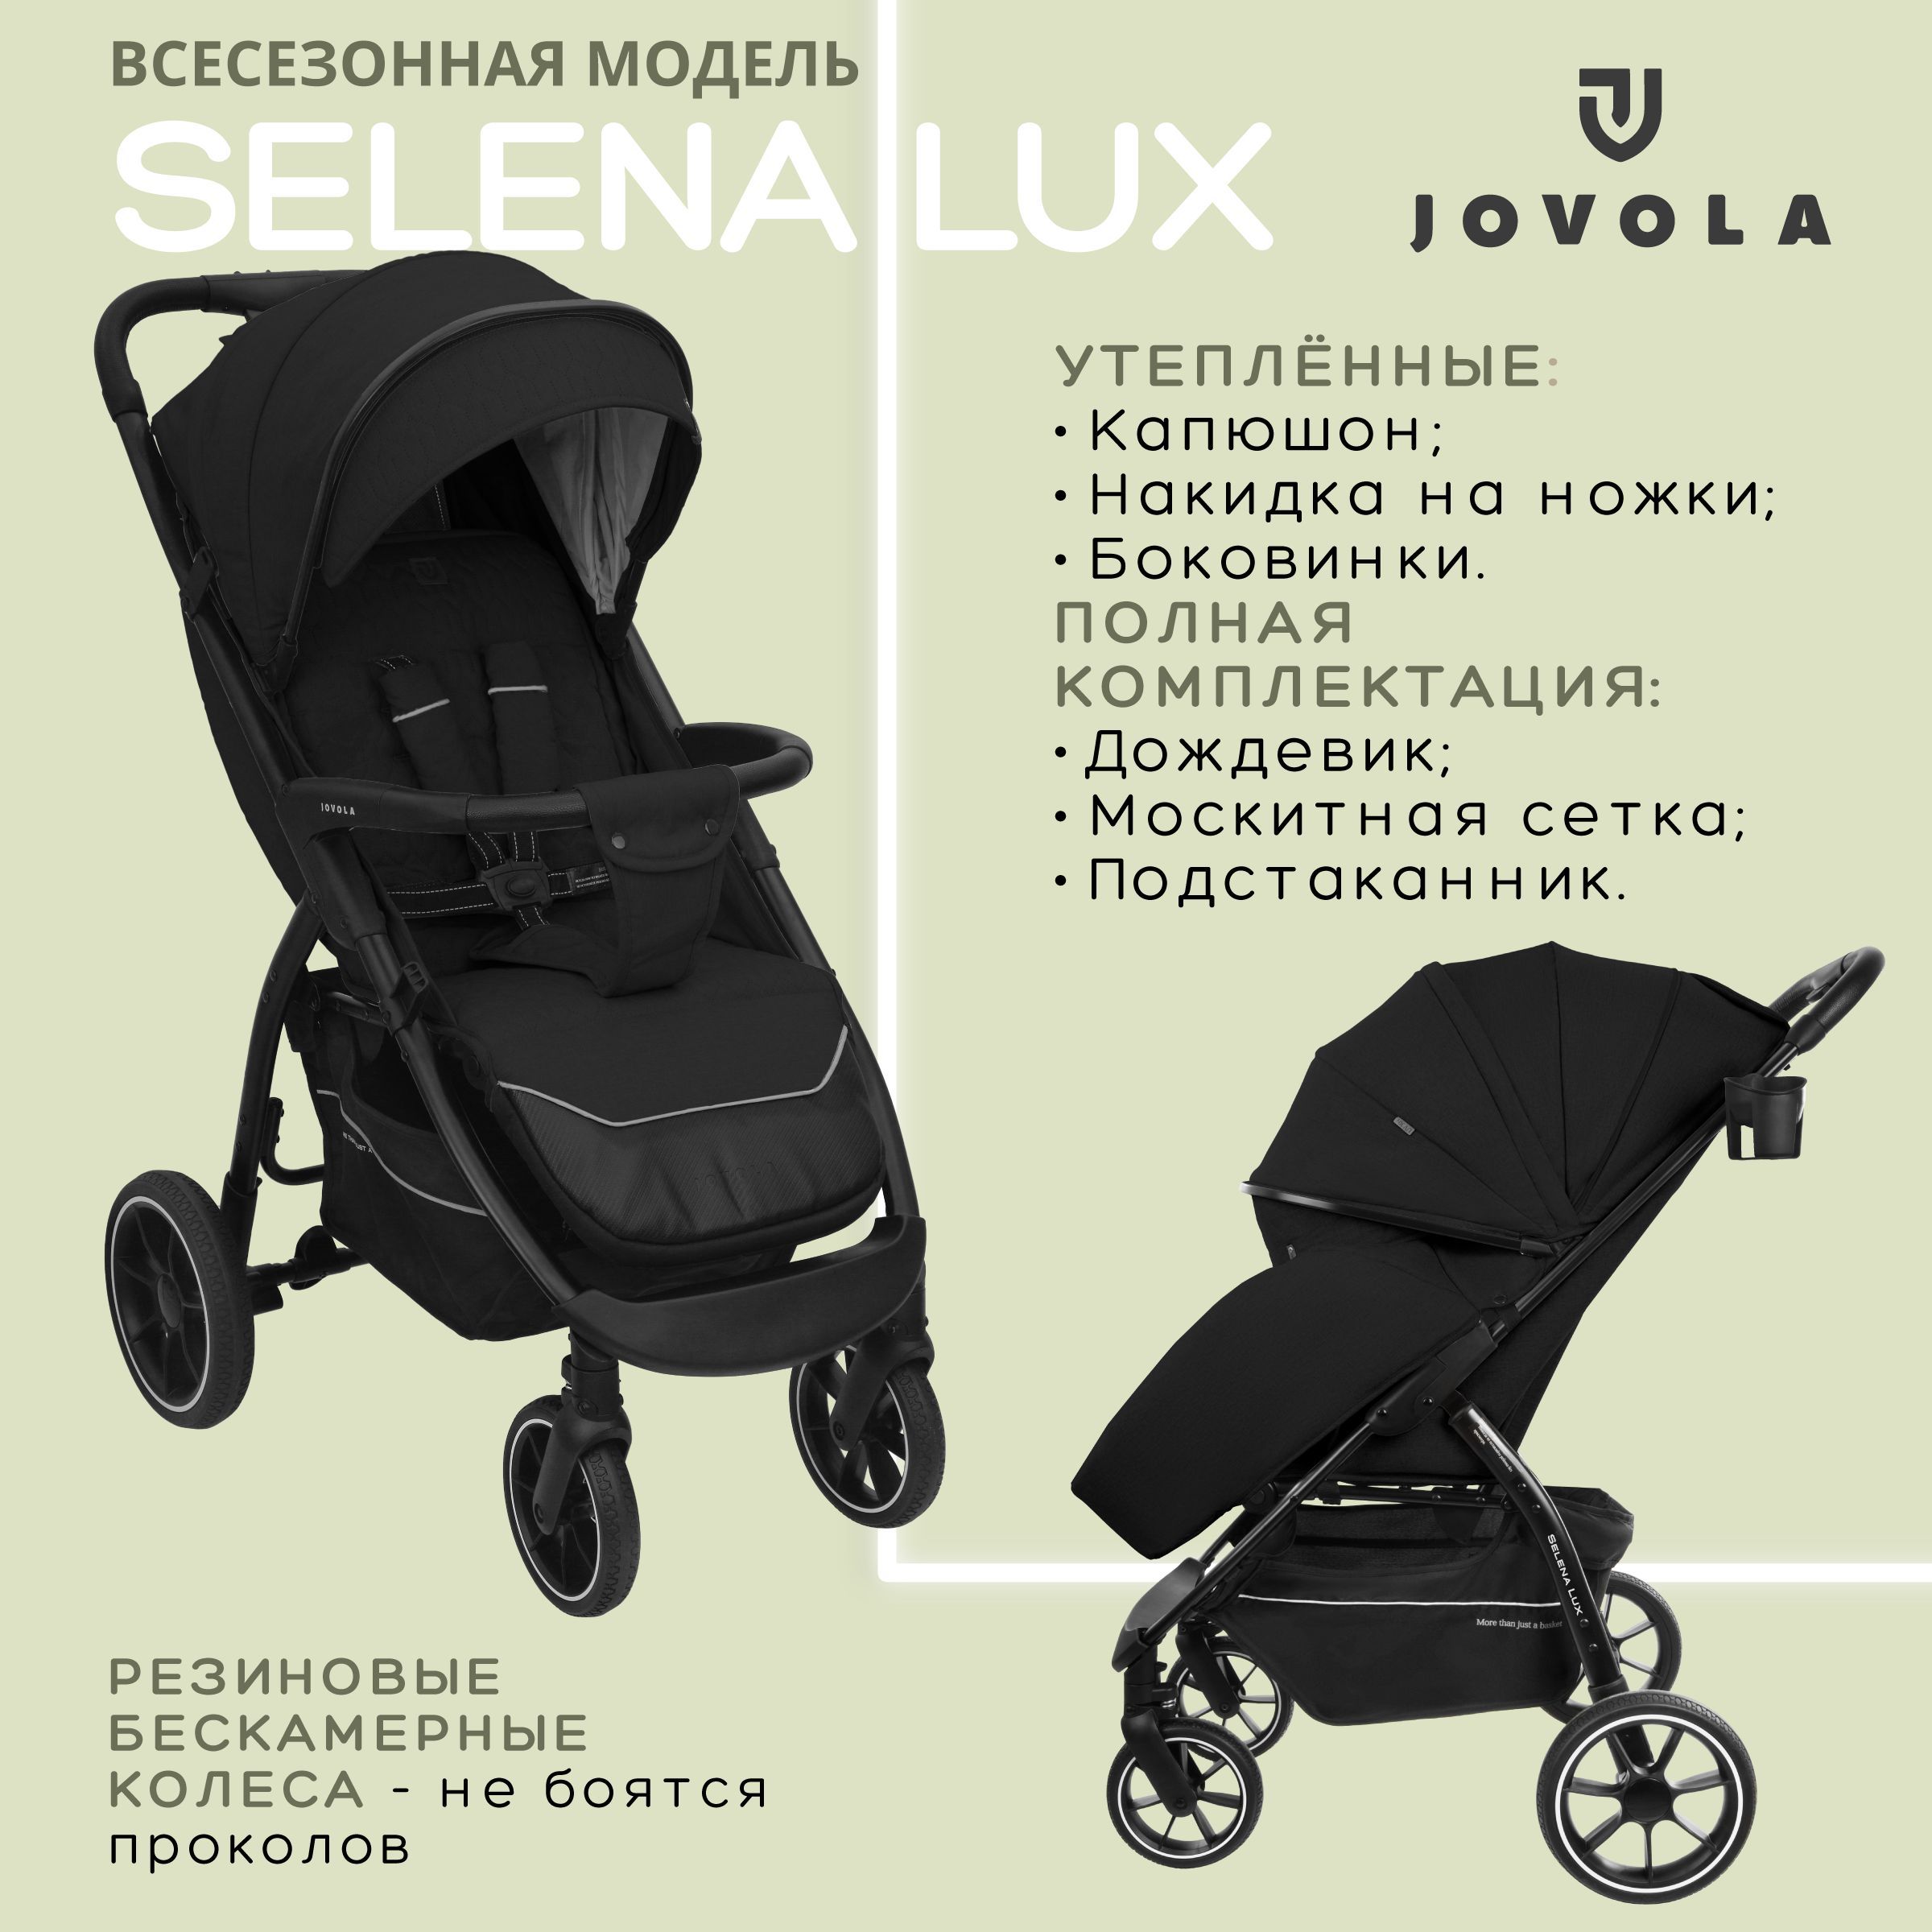 Купить Аксессуары для инвалидной коляски по лучшей цене с доставкой - интернет магазин №1 в России